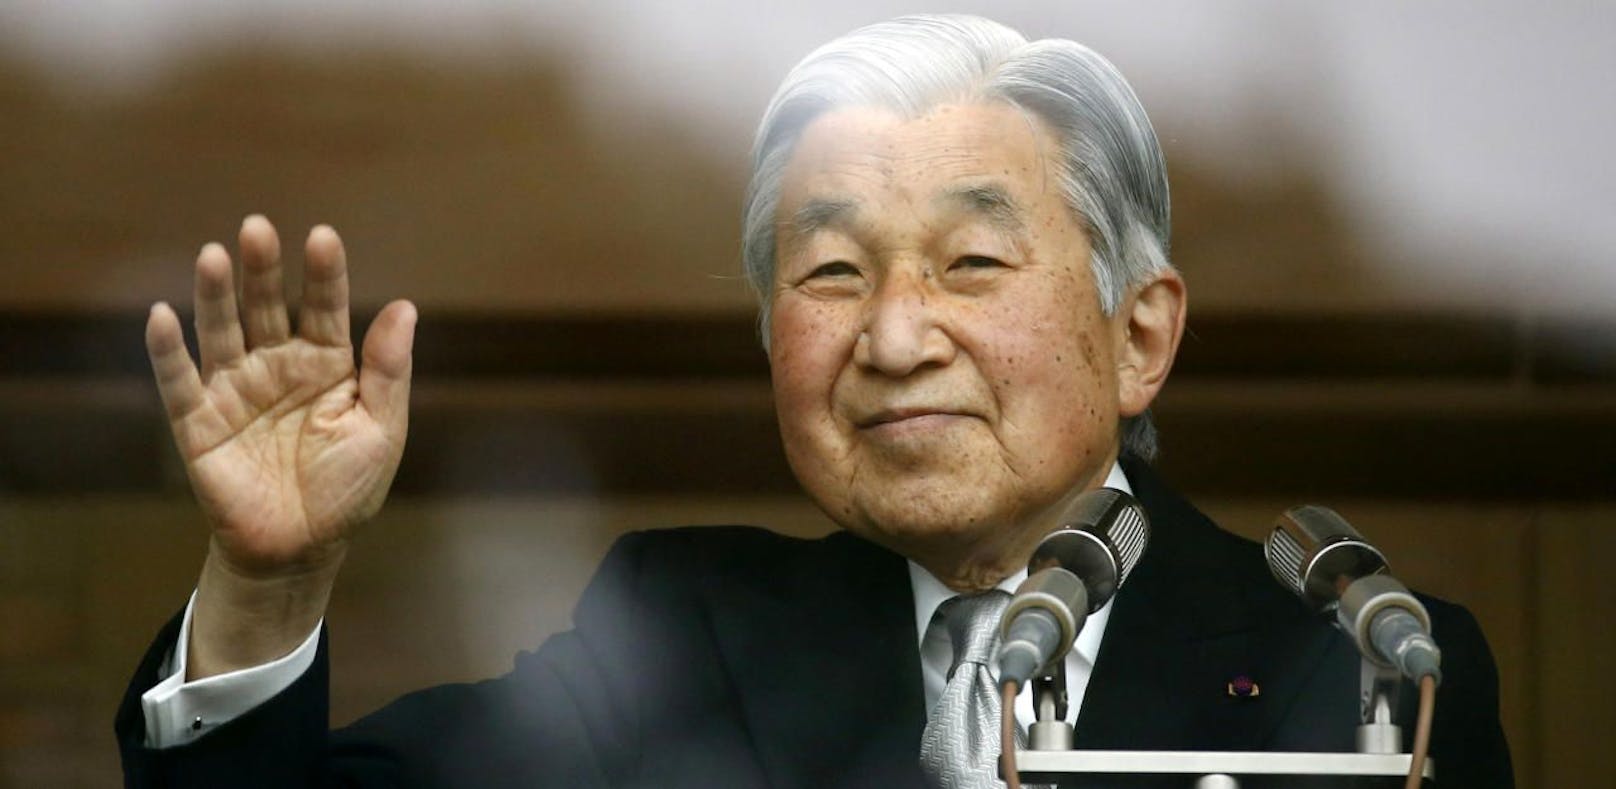 Japans Kaiser Akihito darf offiziell abdanken